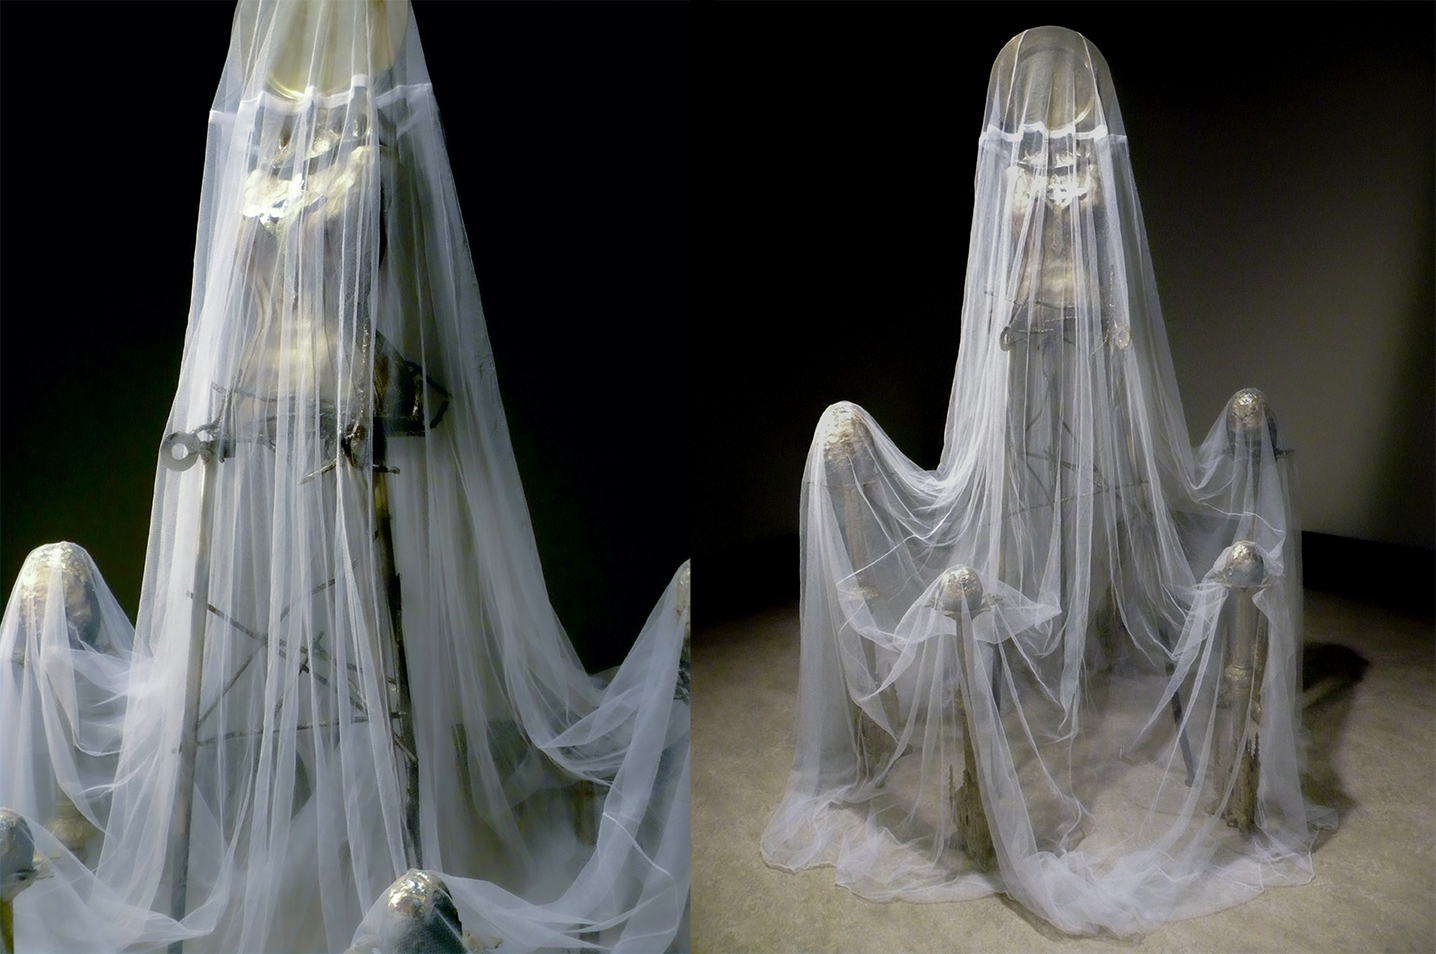 Goddess under a veil of mist …